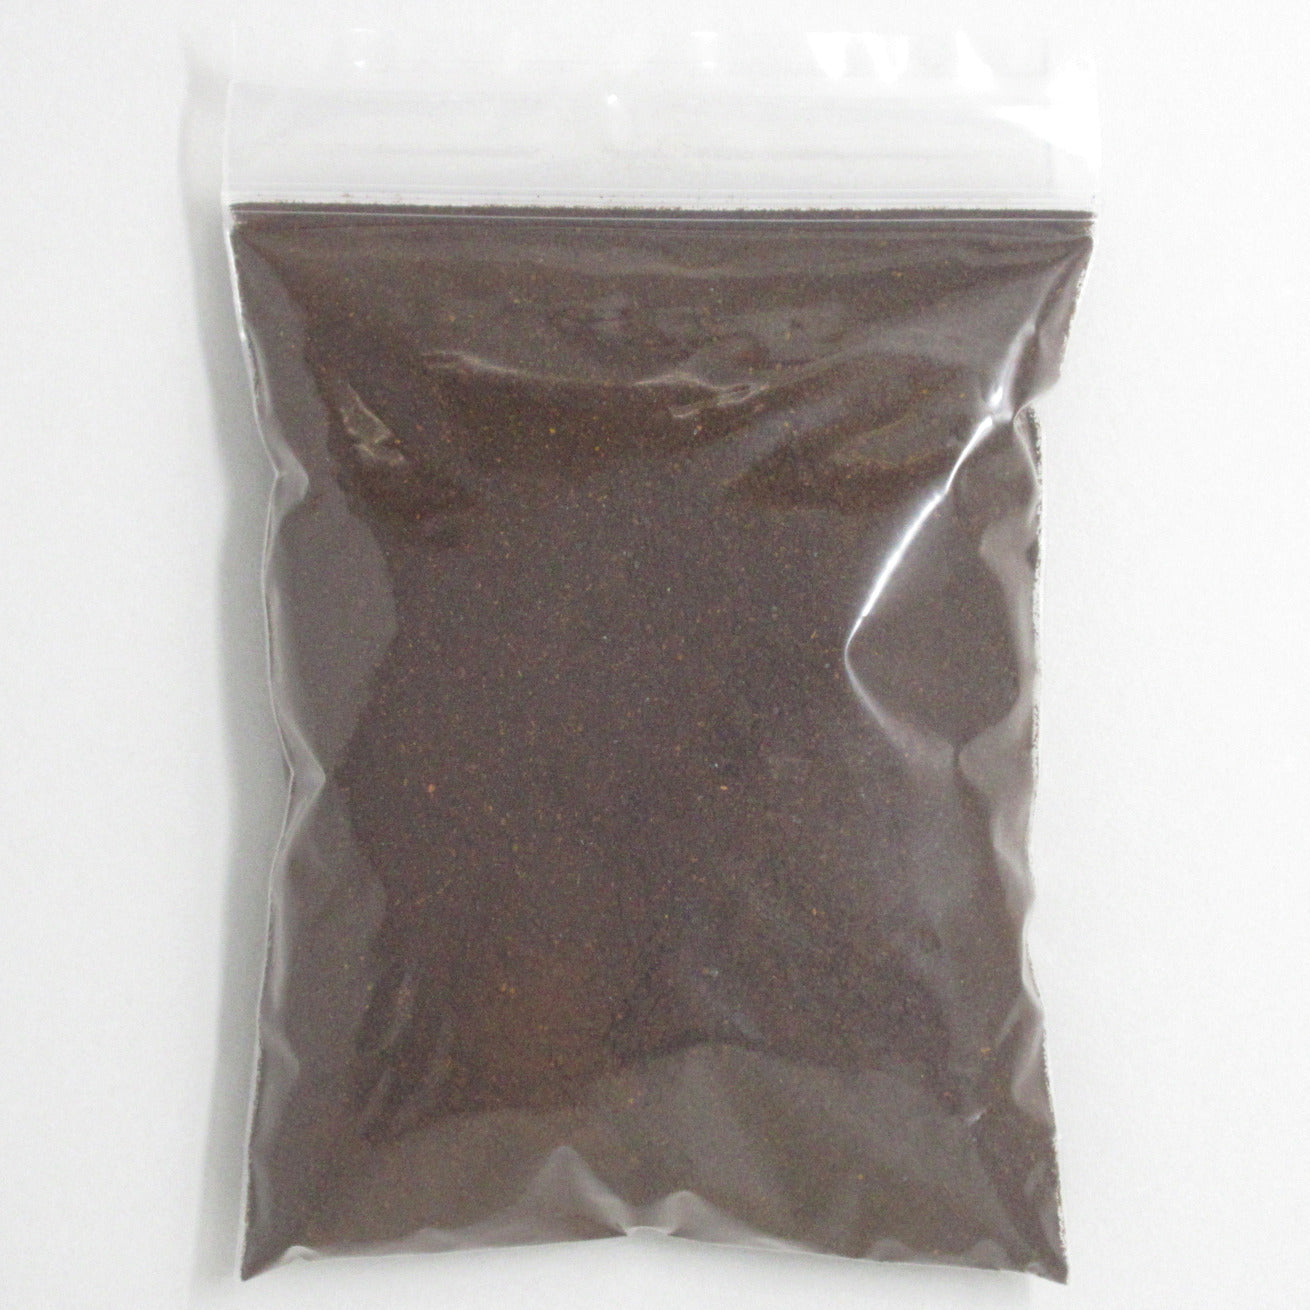 Flour Barrel product image - Chipotle Powder